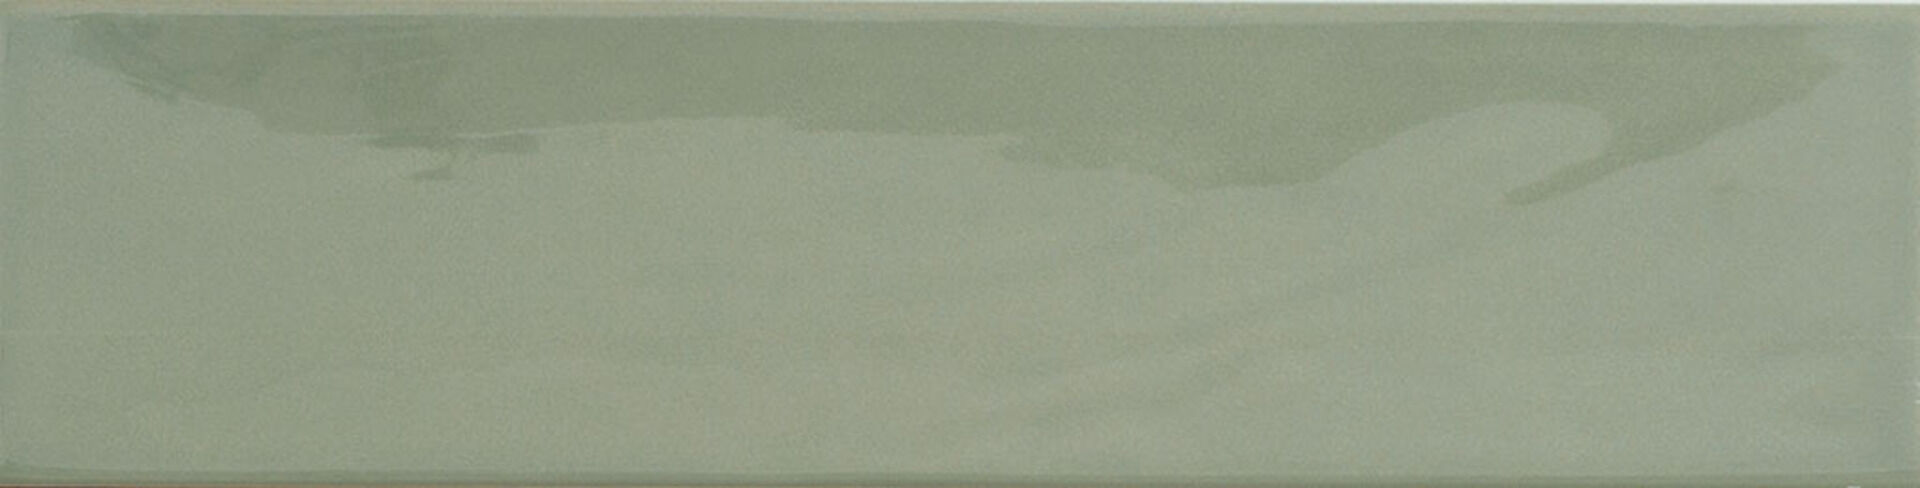 Керамическая плитка KANE SAGE 7,5*30 / коллекция KANE / производитель Cifre / страна Испания